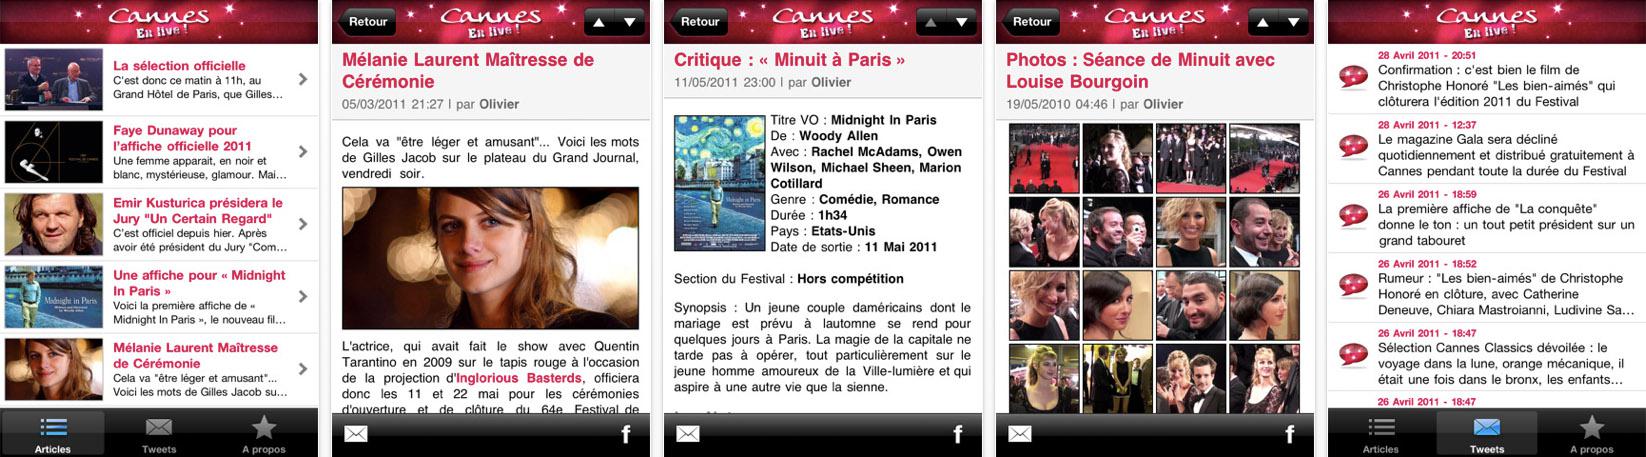 Cannes en Live ! sur iPhone, Facebook et Twitter